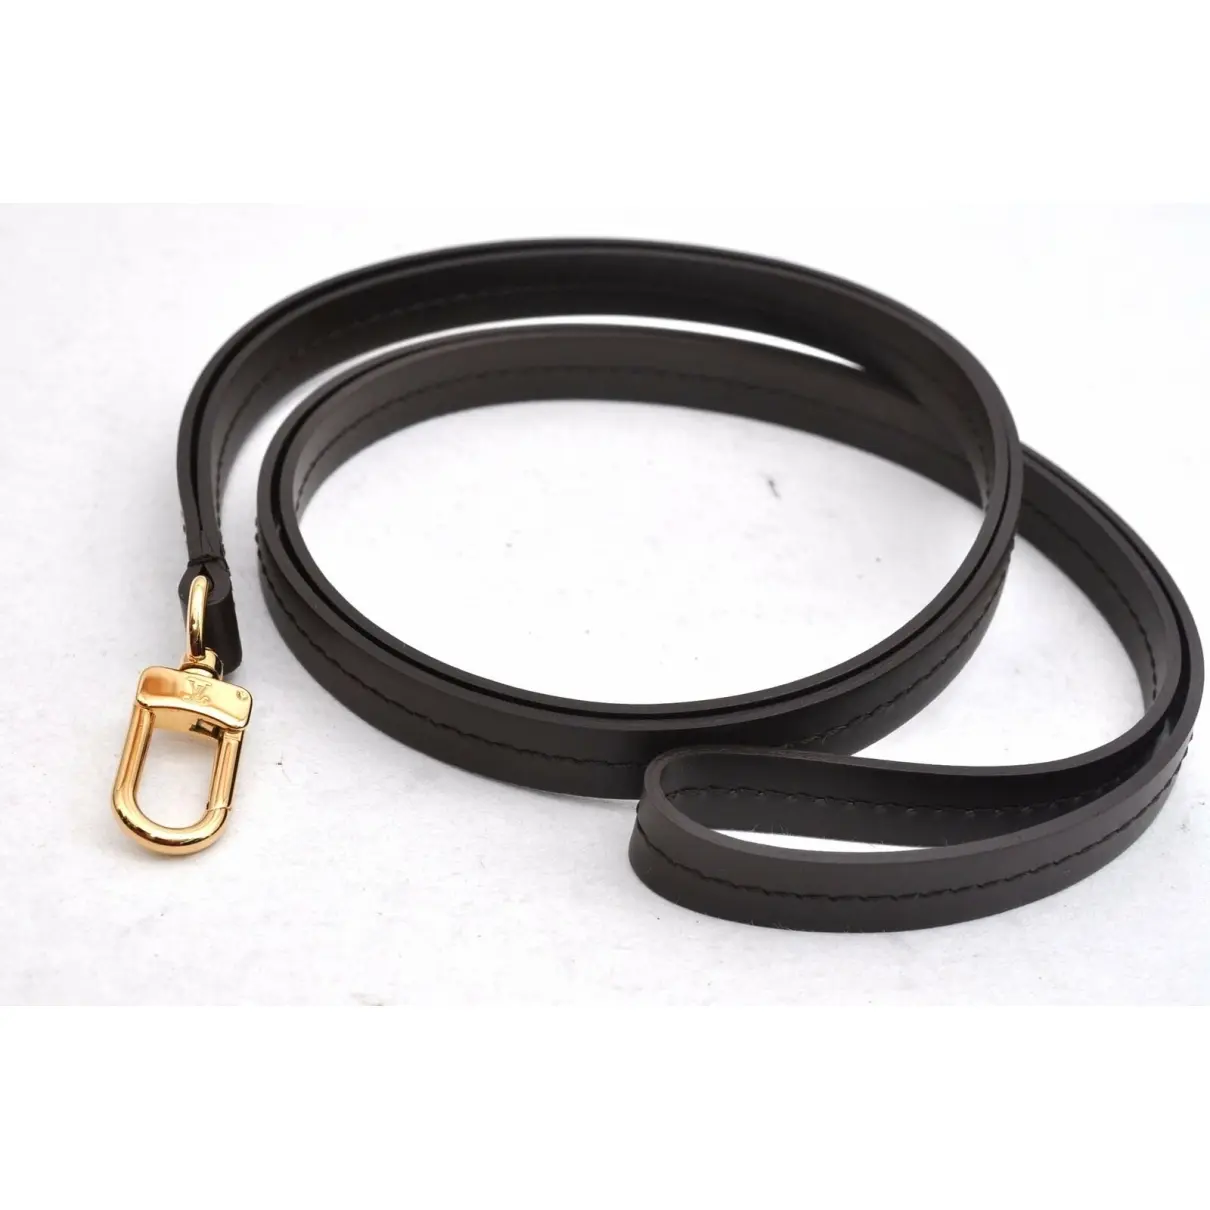 Leather necklace Louis Vuitton